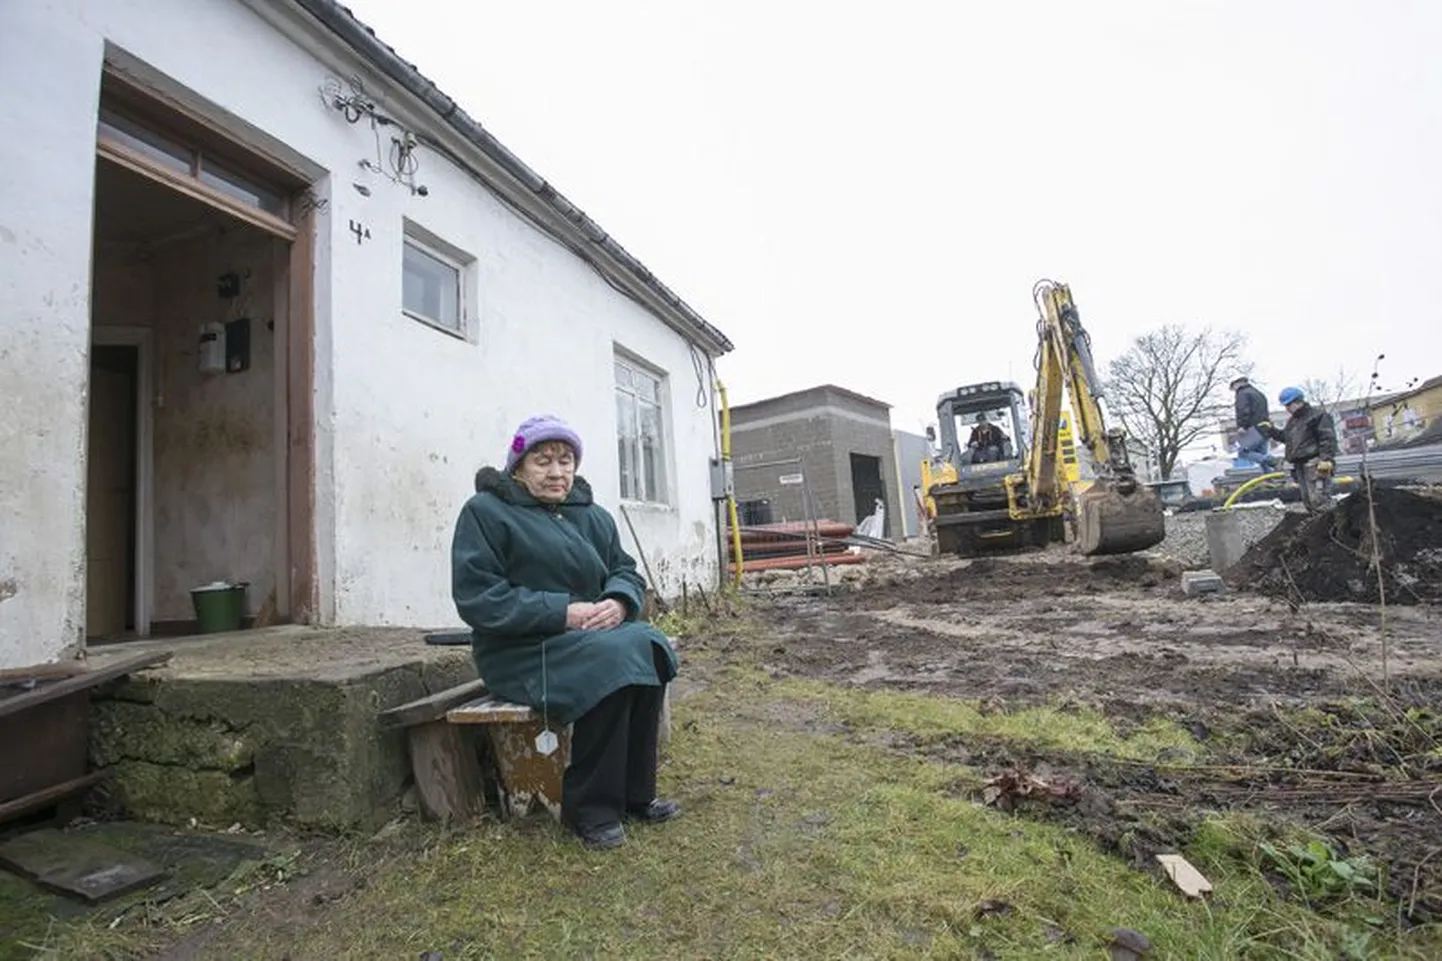 Silvia Jegorovale 56 aastat koduks olnud maja ümbrus on muutunud ehitusplatsiks. Naine ei tahaks minna, kuid kohus käsib. Valus on ikka.